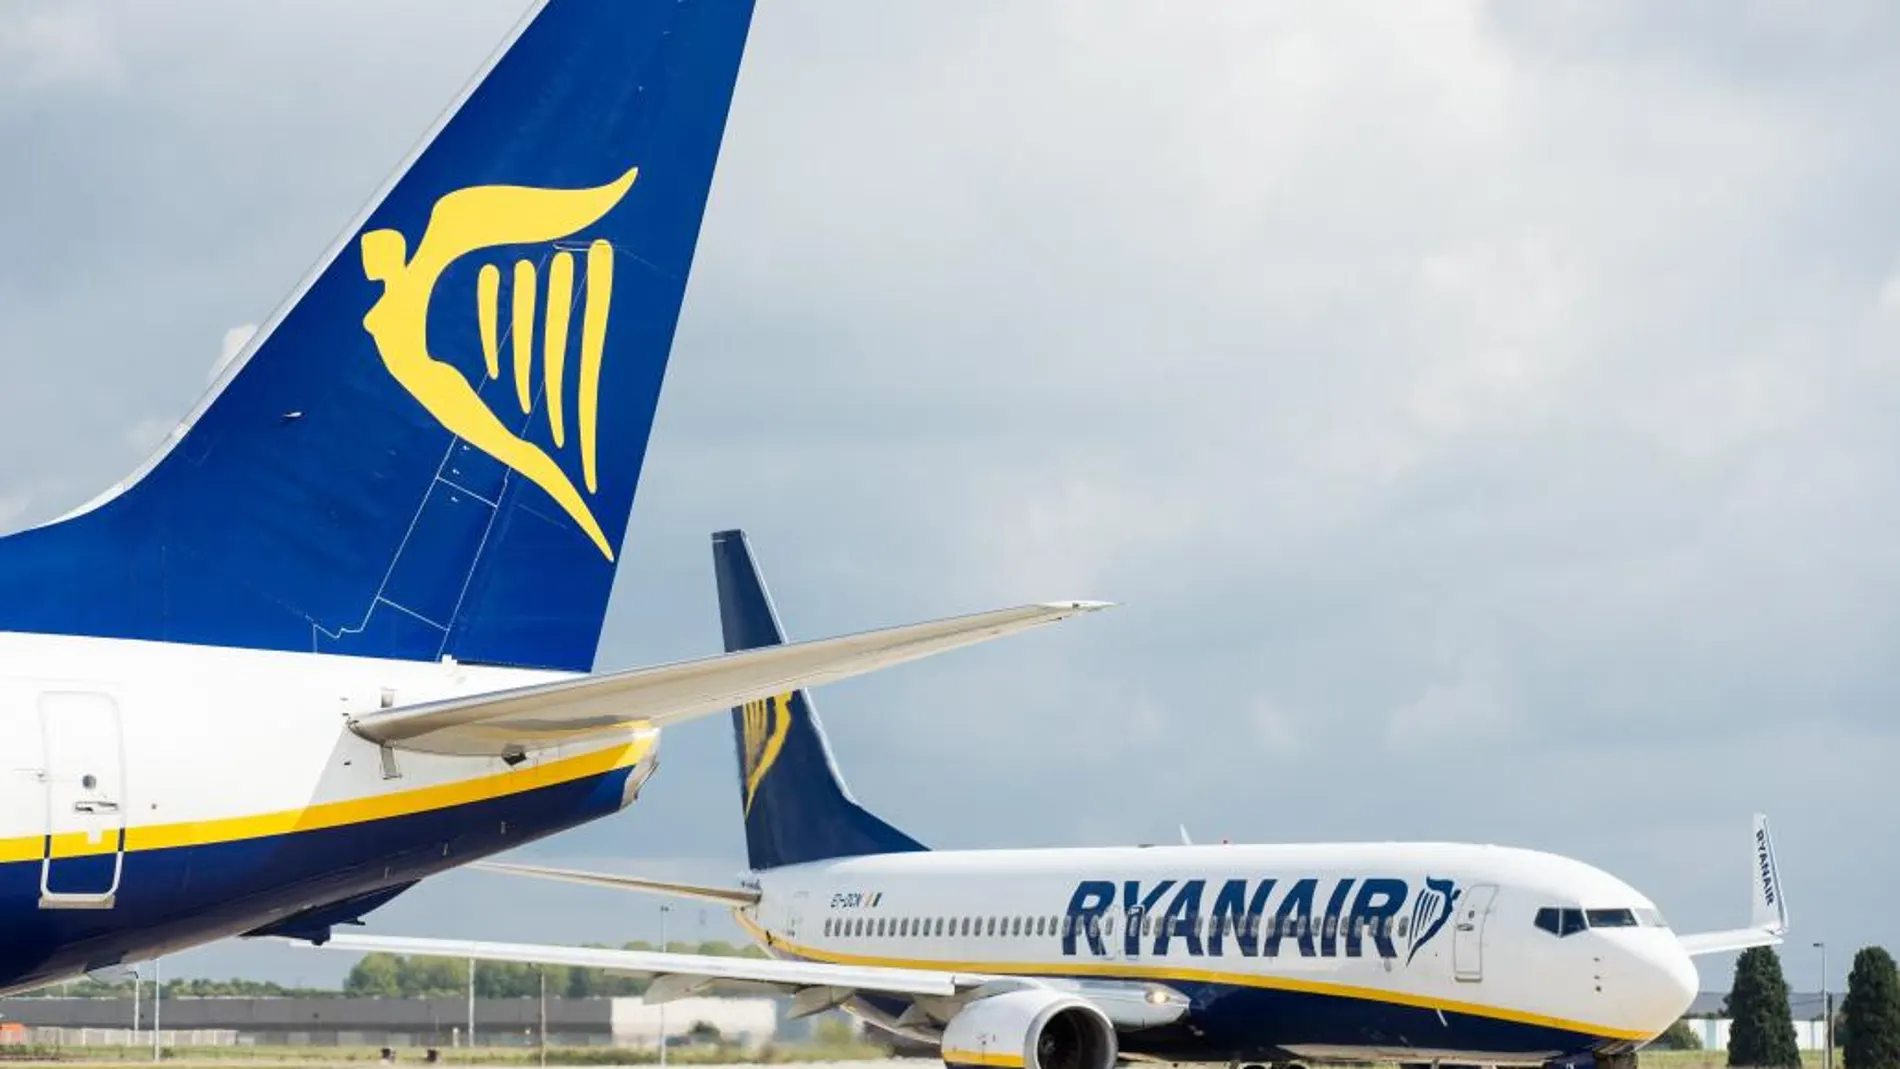 Dos aviones de la aerolínea irlandesa Ryanair esperan su siguiente vuelo en el aeropuerto de Charleroi (Bélgica) ayer